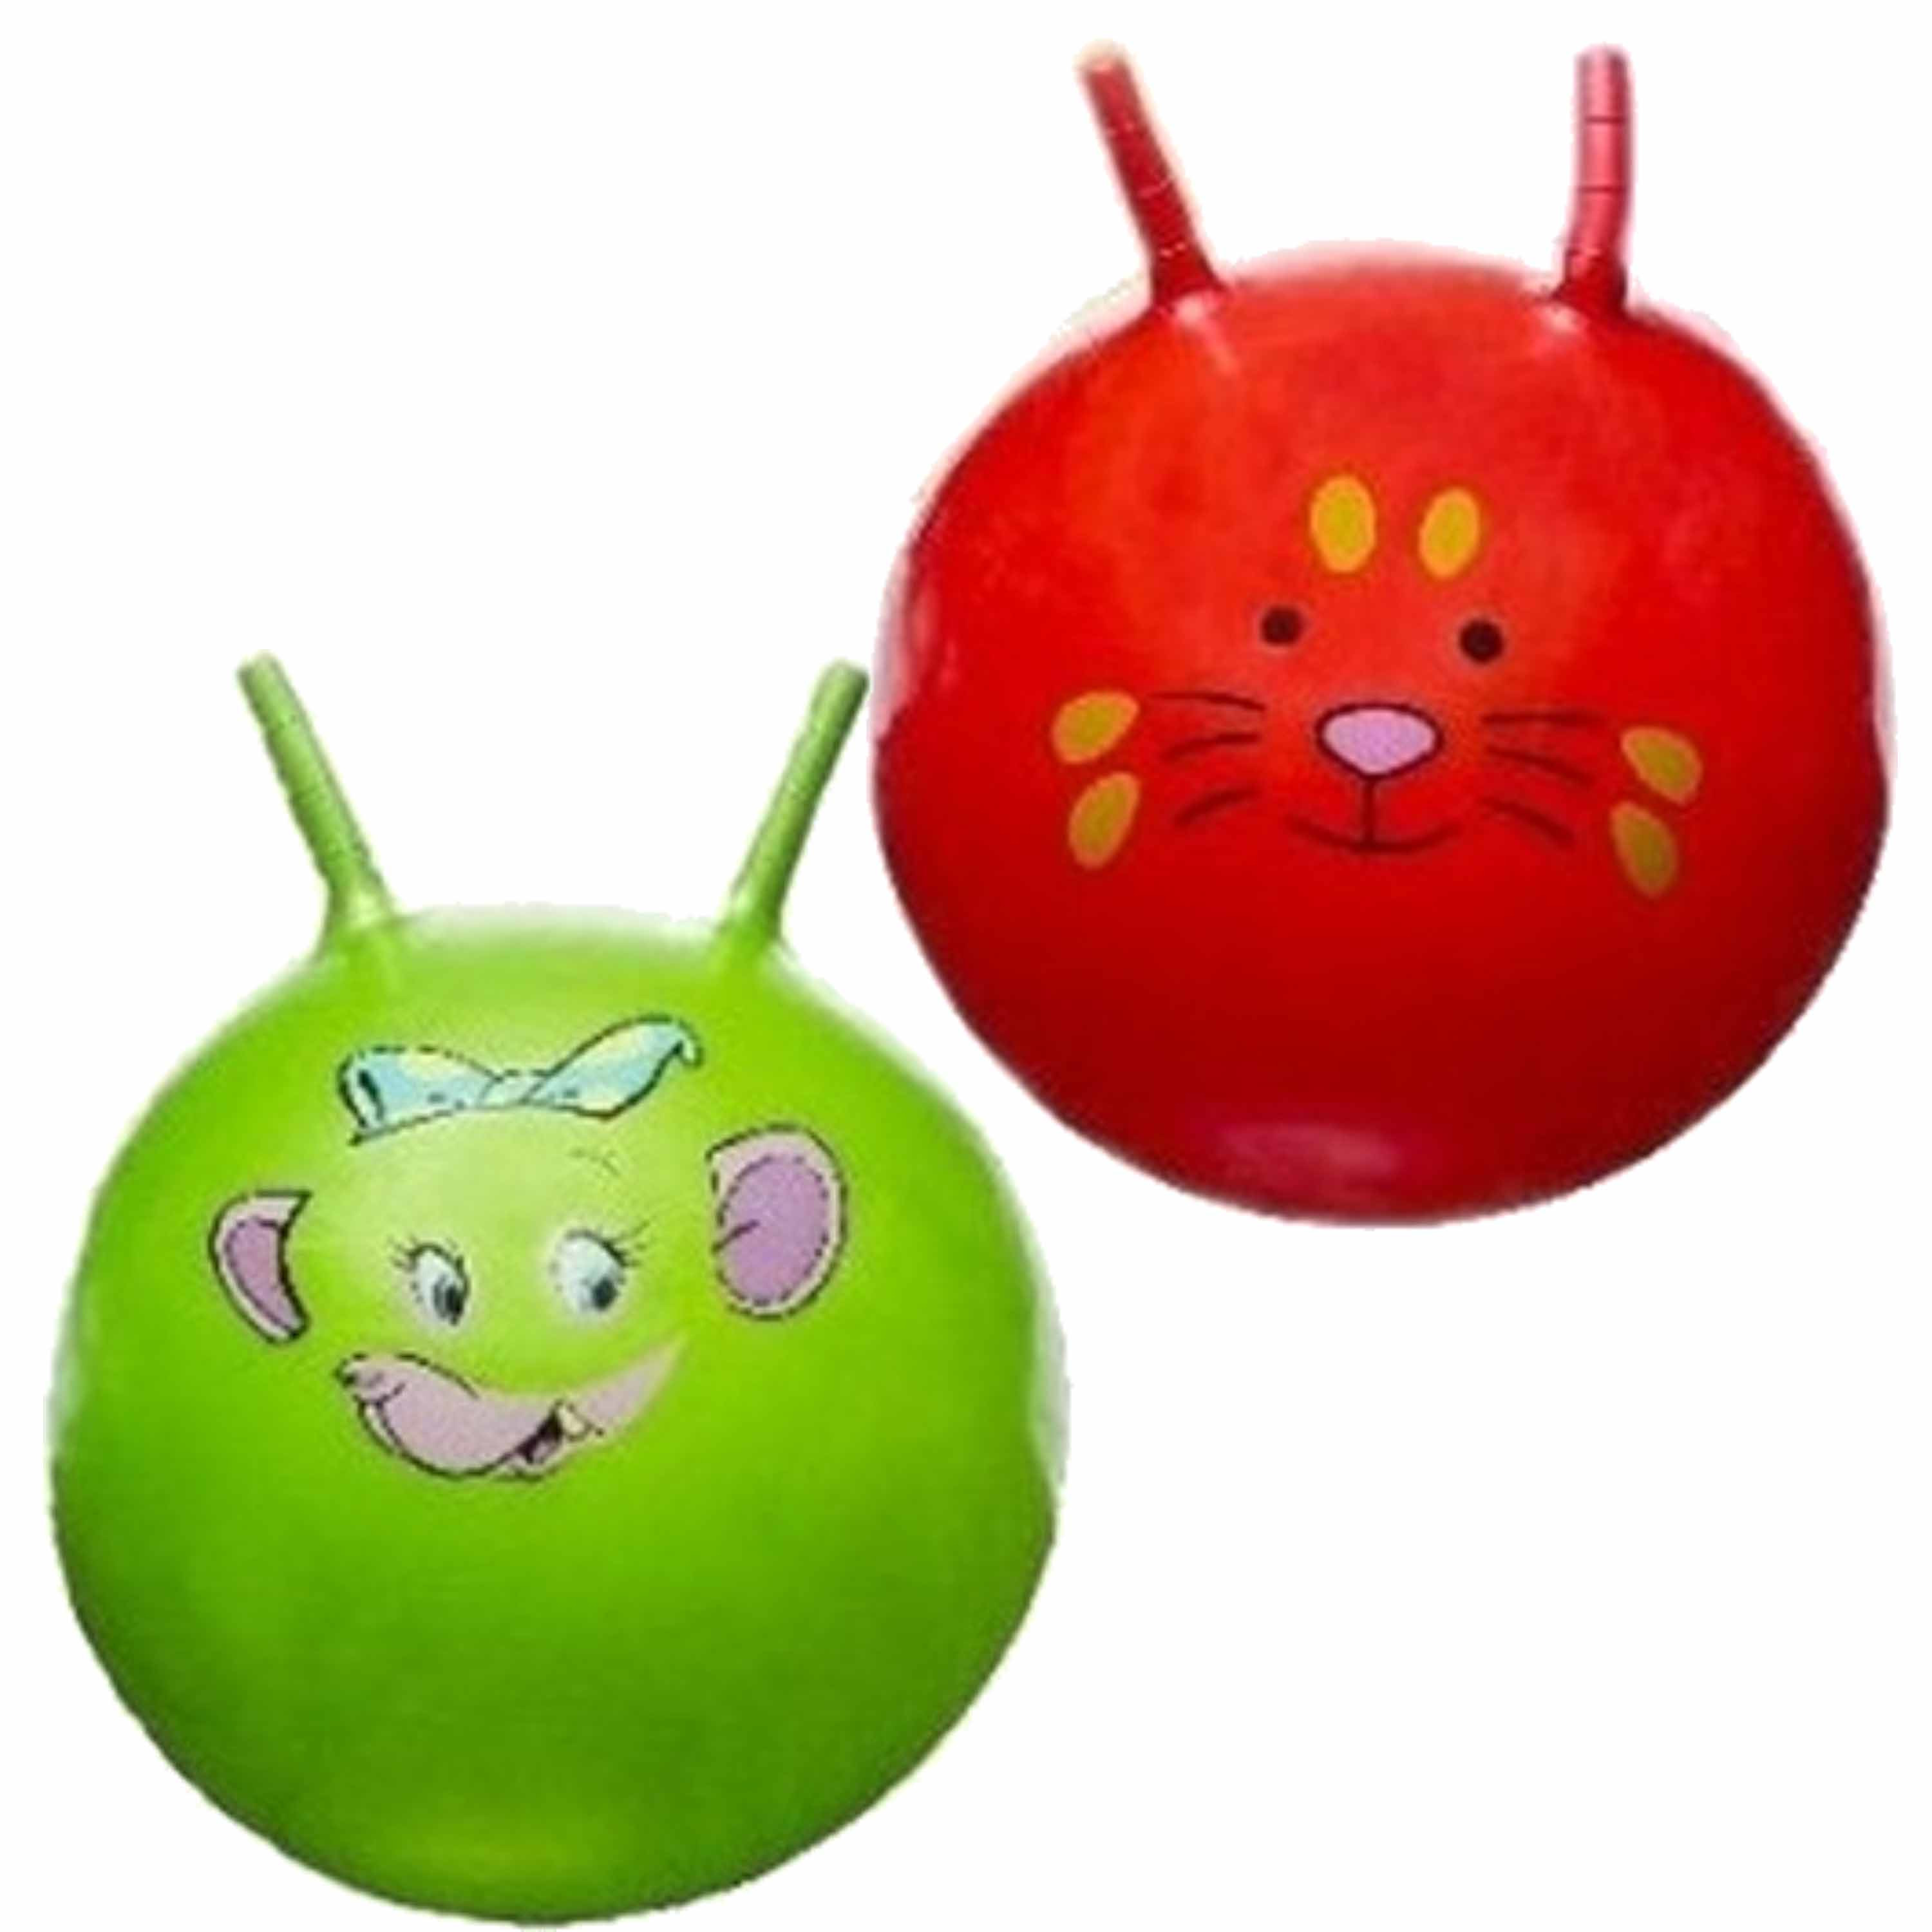 2x stuks speelgoed Skippyballen met dieren gezicht rood en groen 46 cm